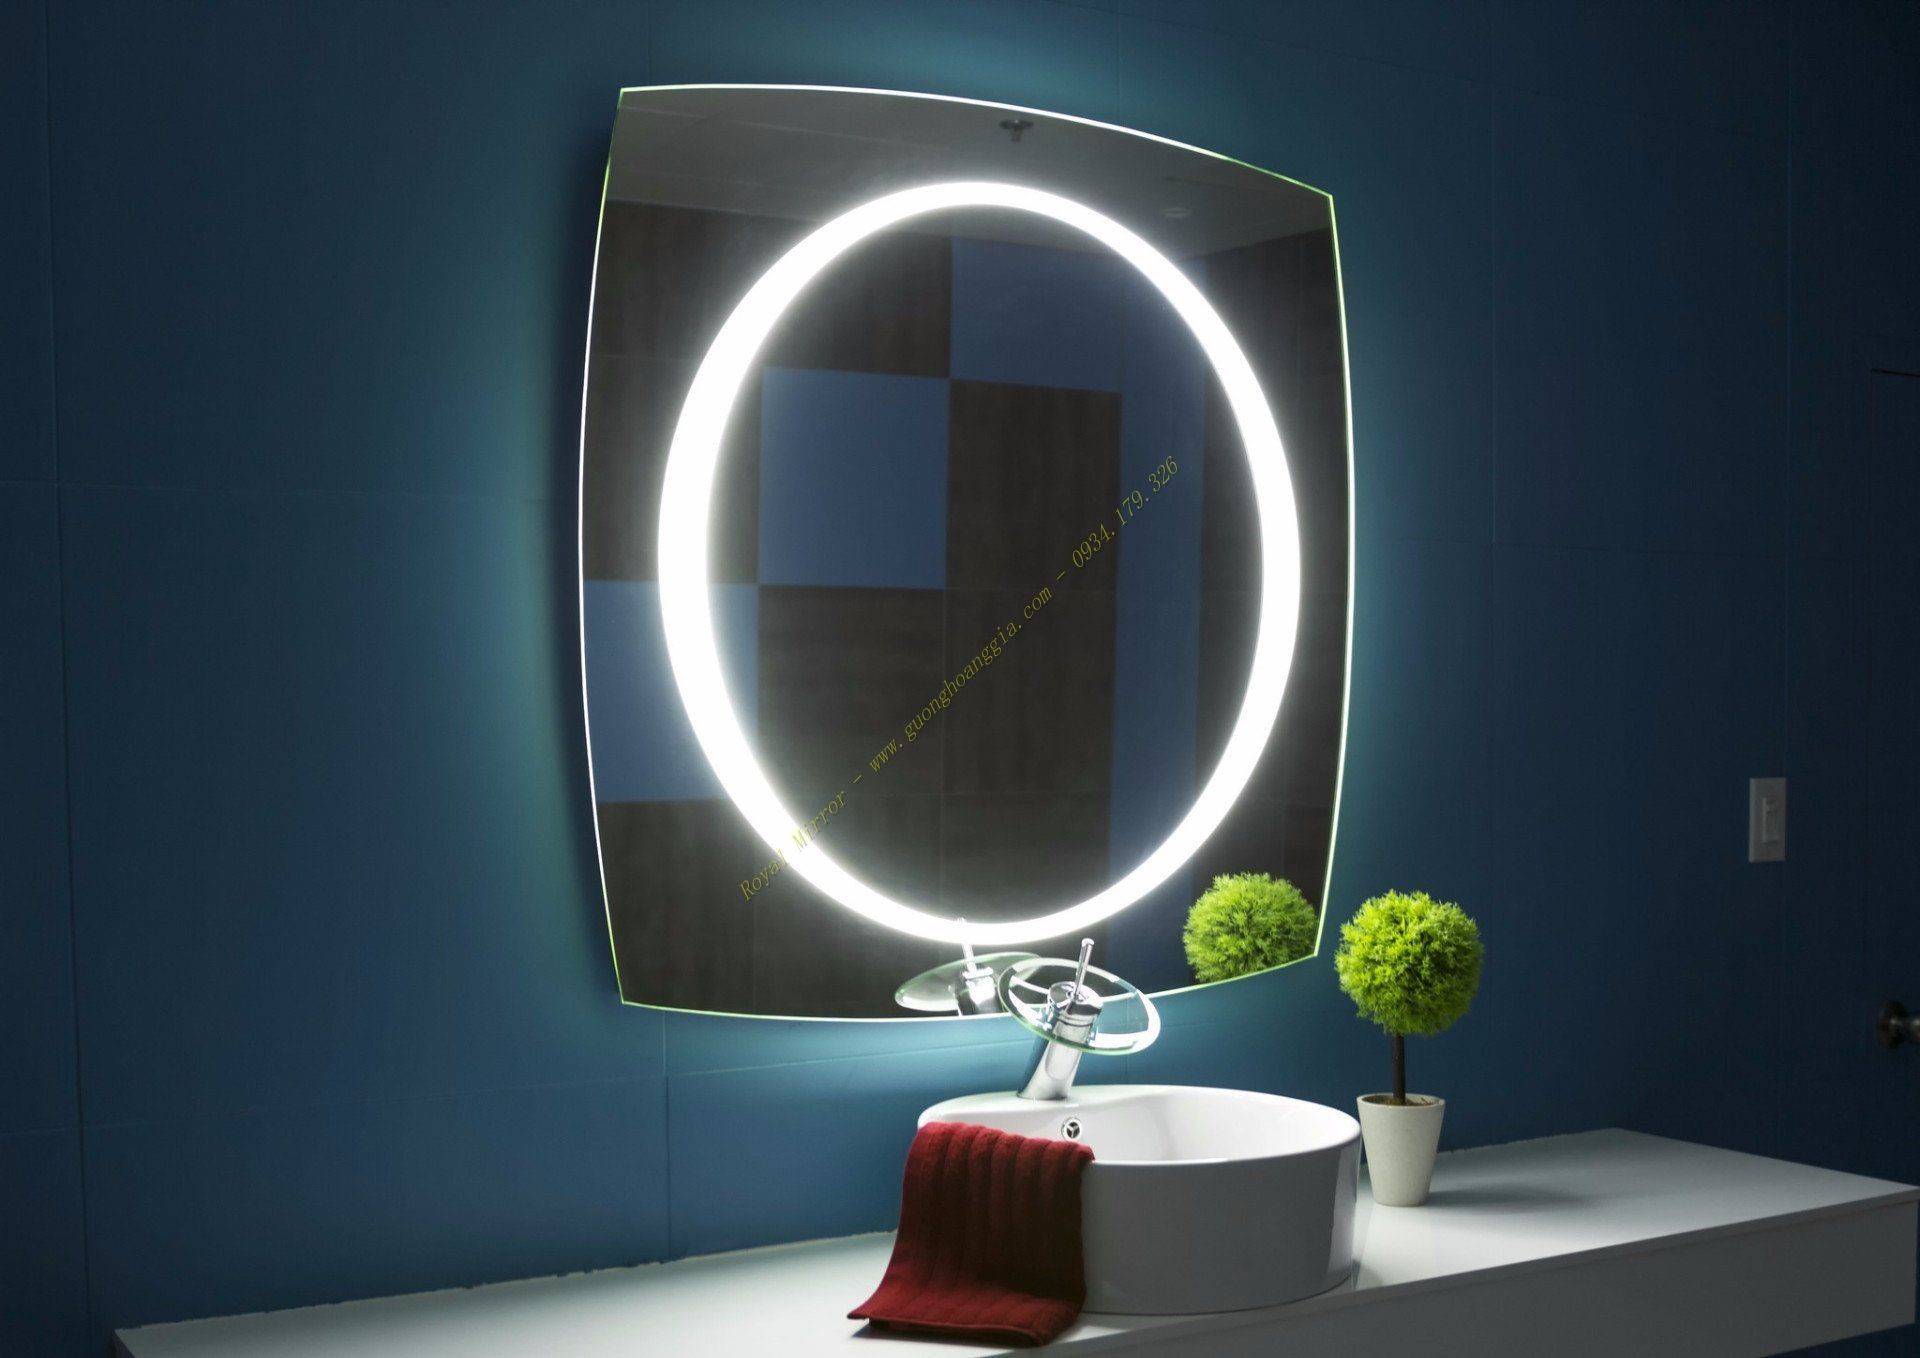 Đèn LED decor 80 * 80 cm cao cấp của Royal Mirror có công nghệ chống ố mốc RFP, được chế tác tinh xảo, có gì đặc biệt?